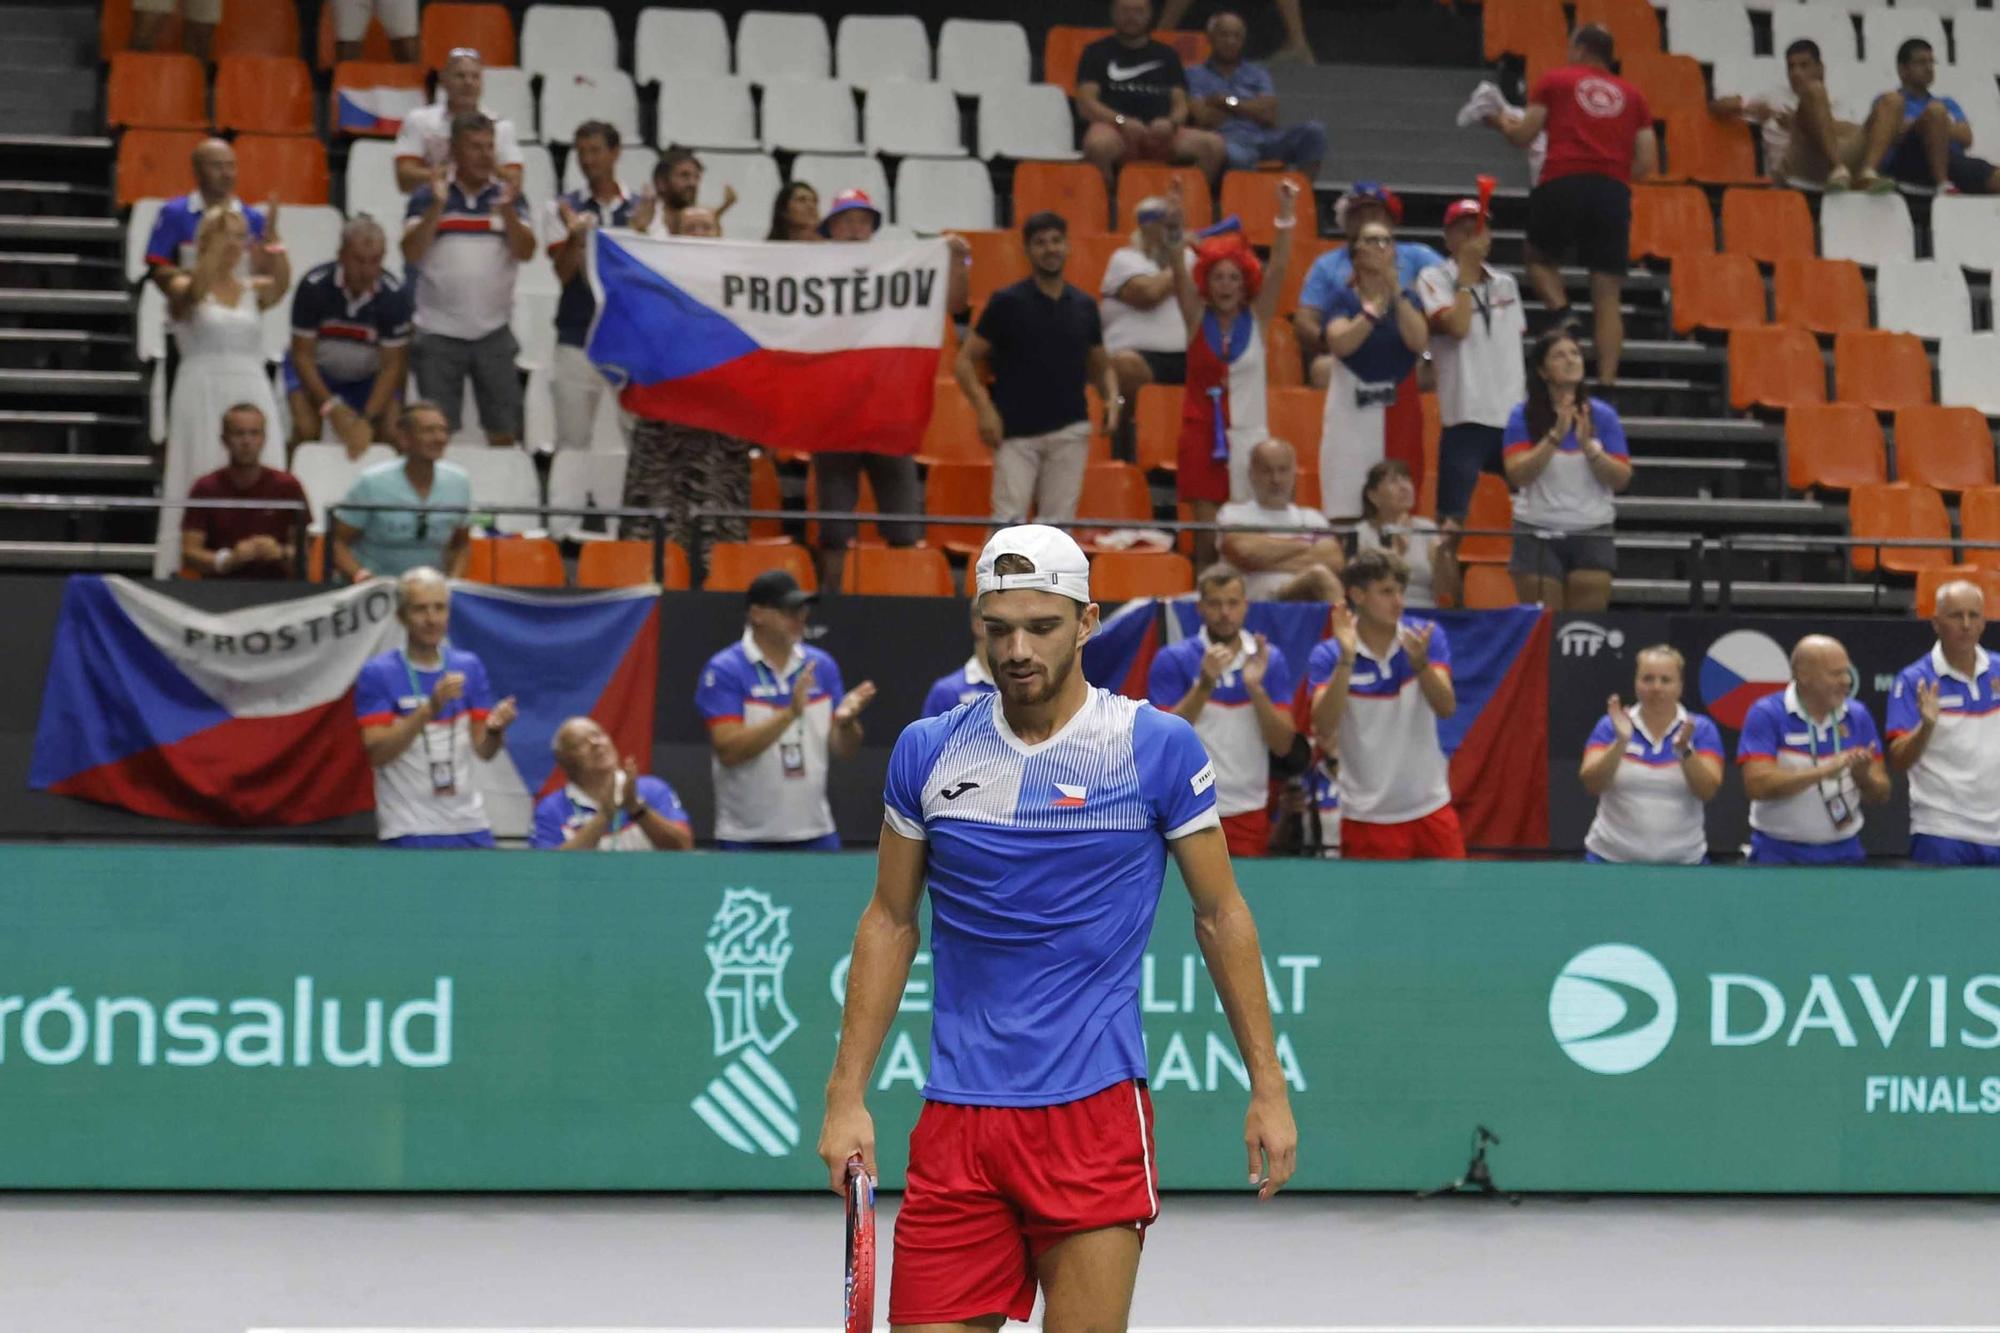 Tercera jornada de Copa Davis entre Rep. Checa y Corea